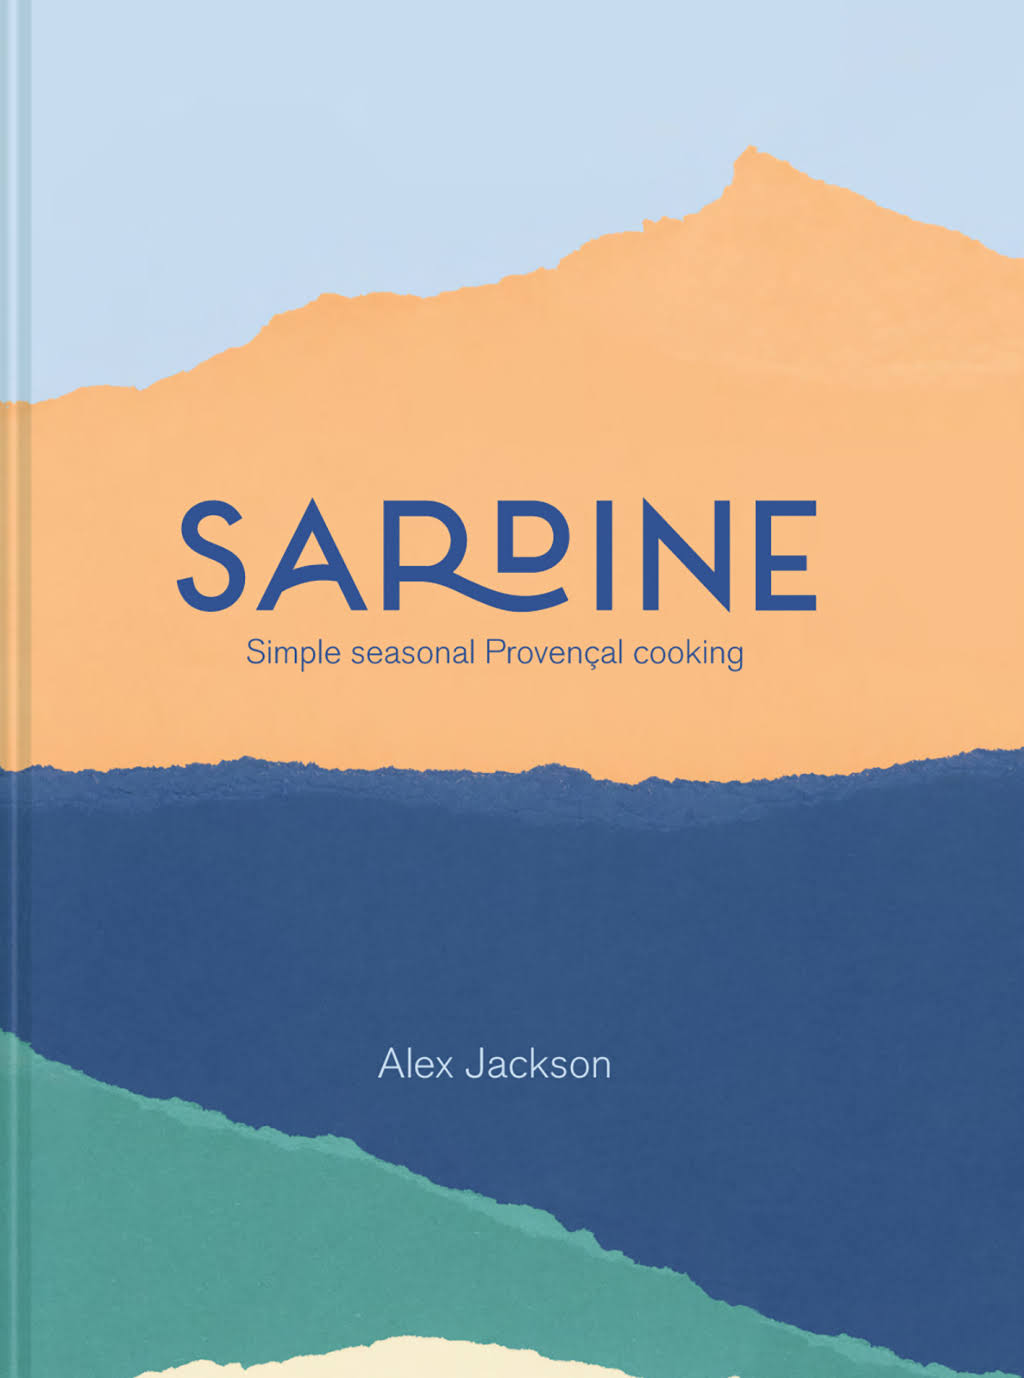 Sardine by Alex Jackson